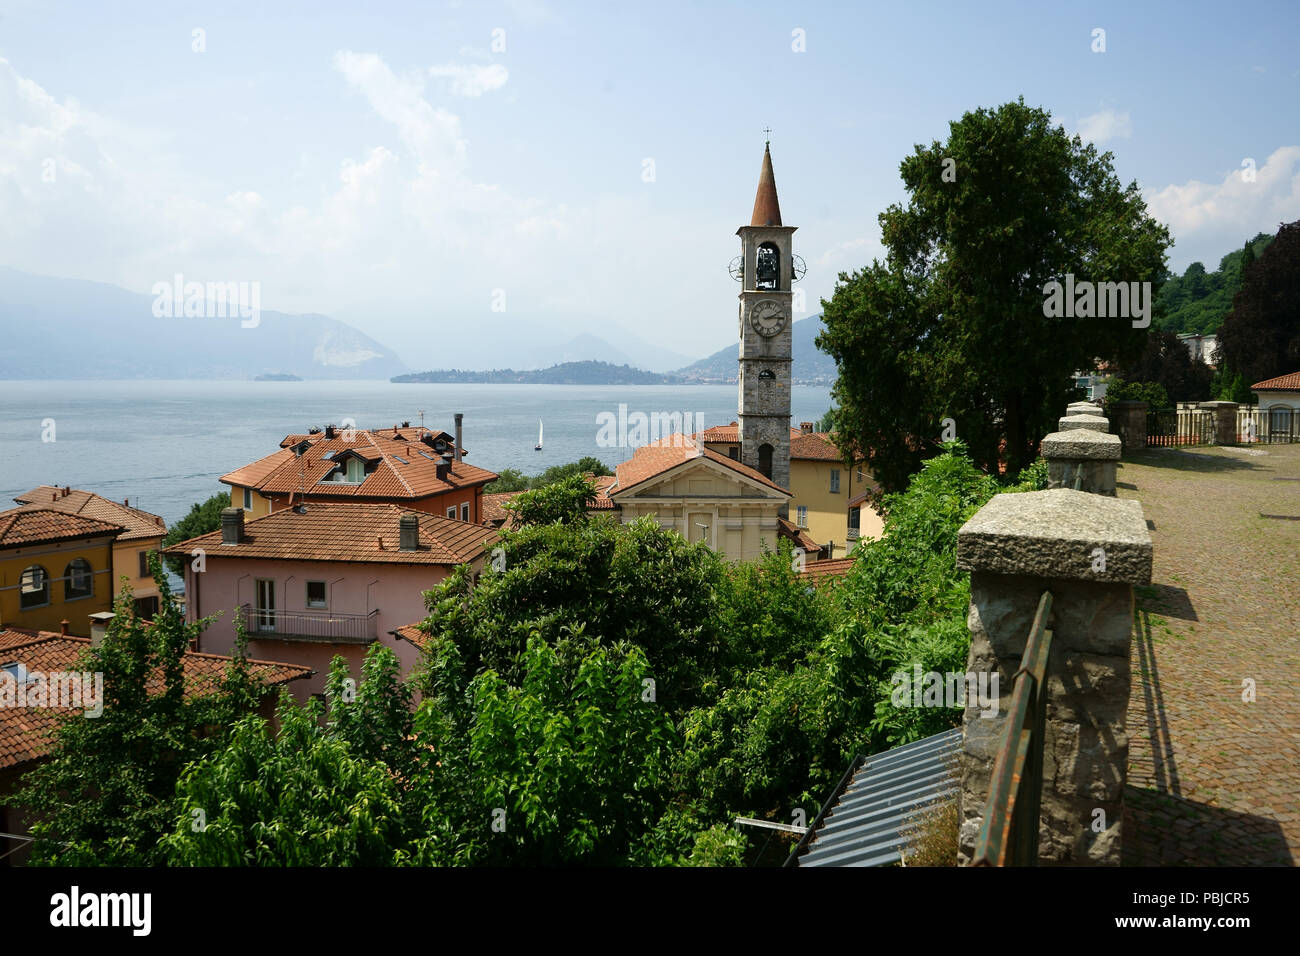 Town Laveno - Mobello on Lago Maggiore, Lombardia, Italy Stock Photo